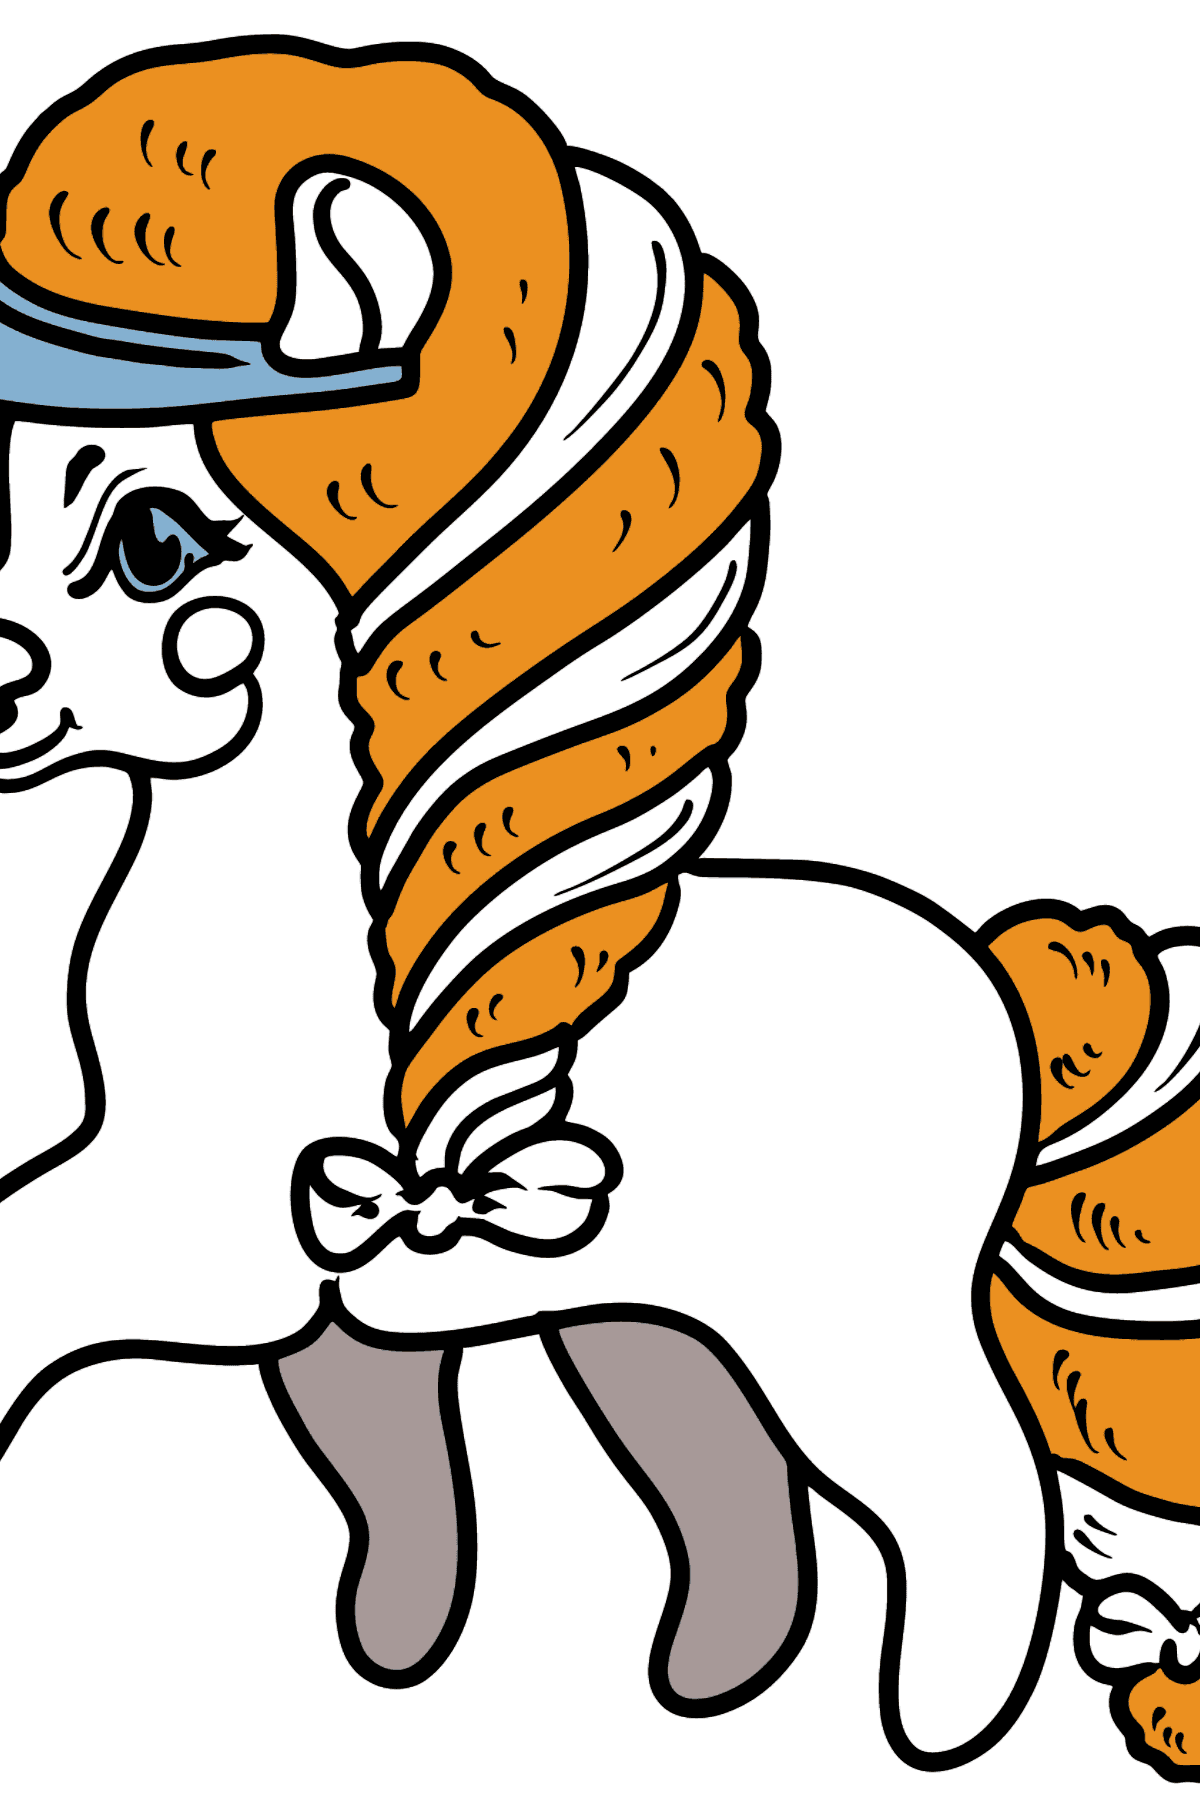 Dibujo para colorear - Pony fashionista - Dibujos para Colorear para Niños